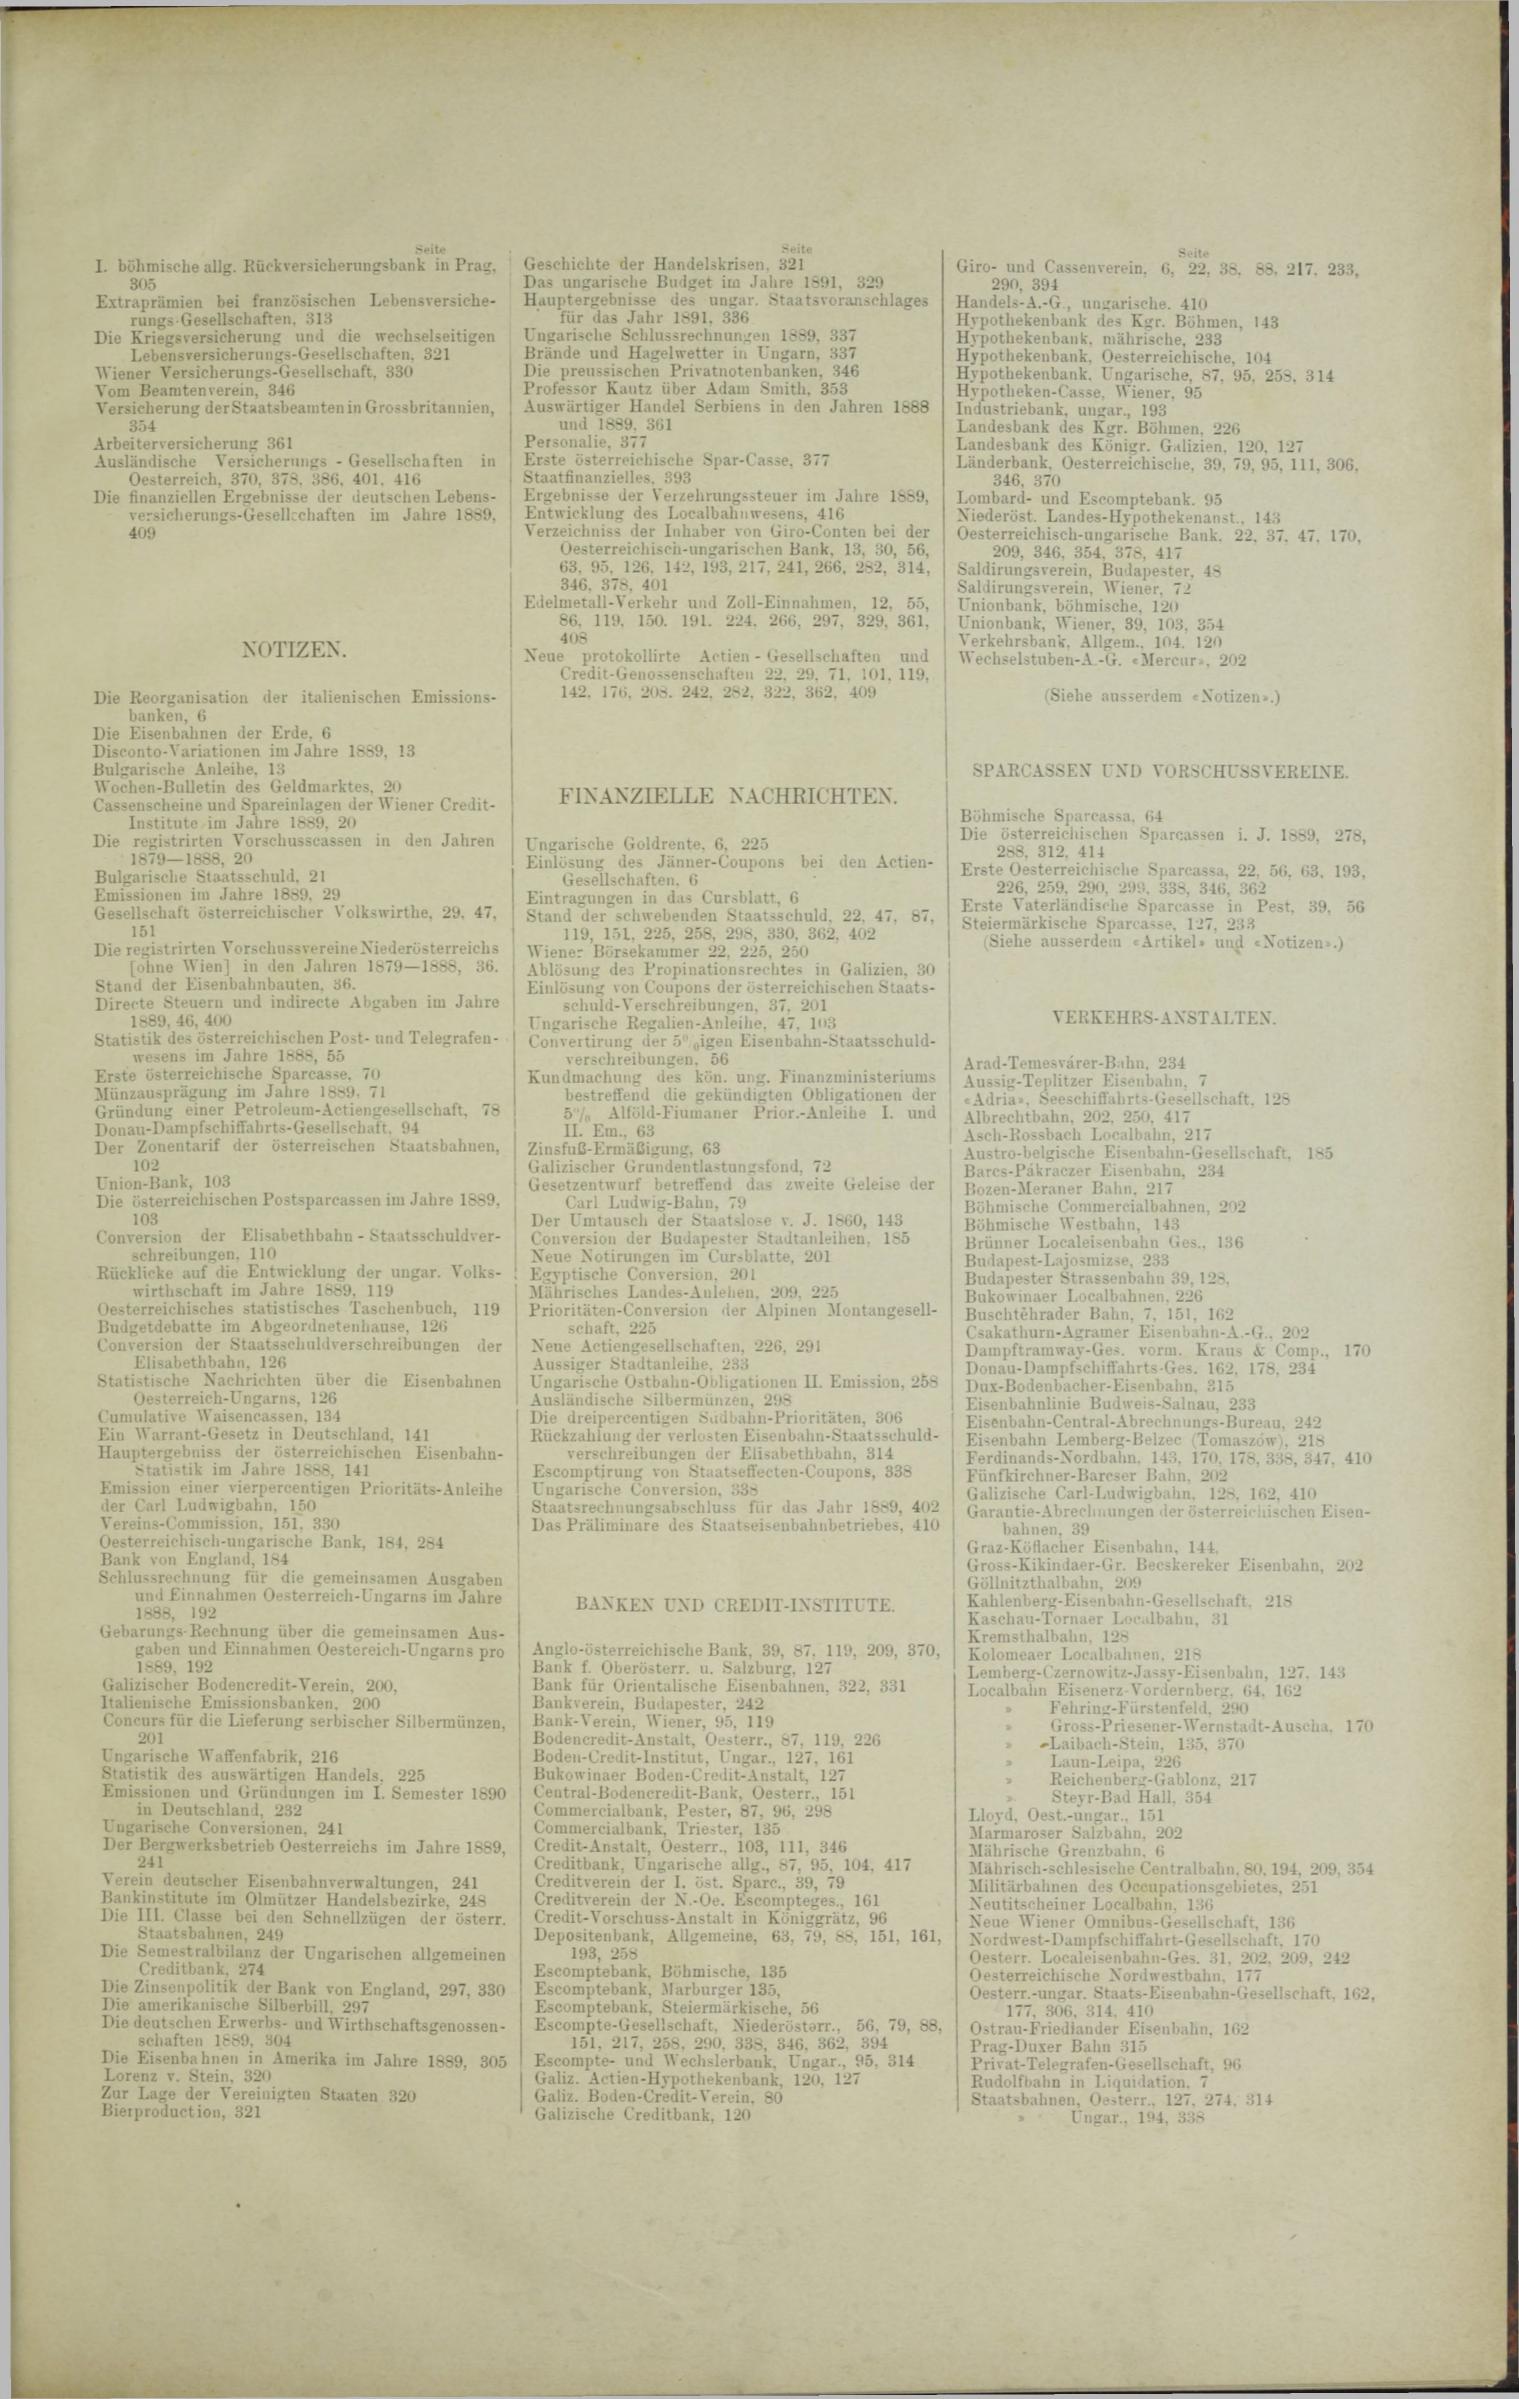 Der Tresor 10.04.1890 - Seite 9